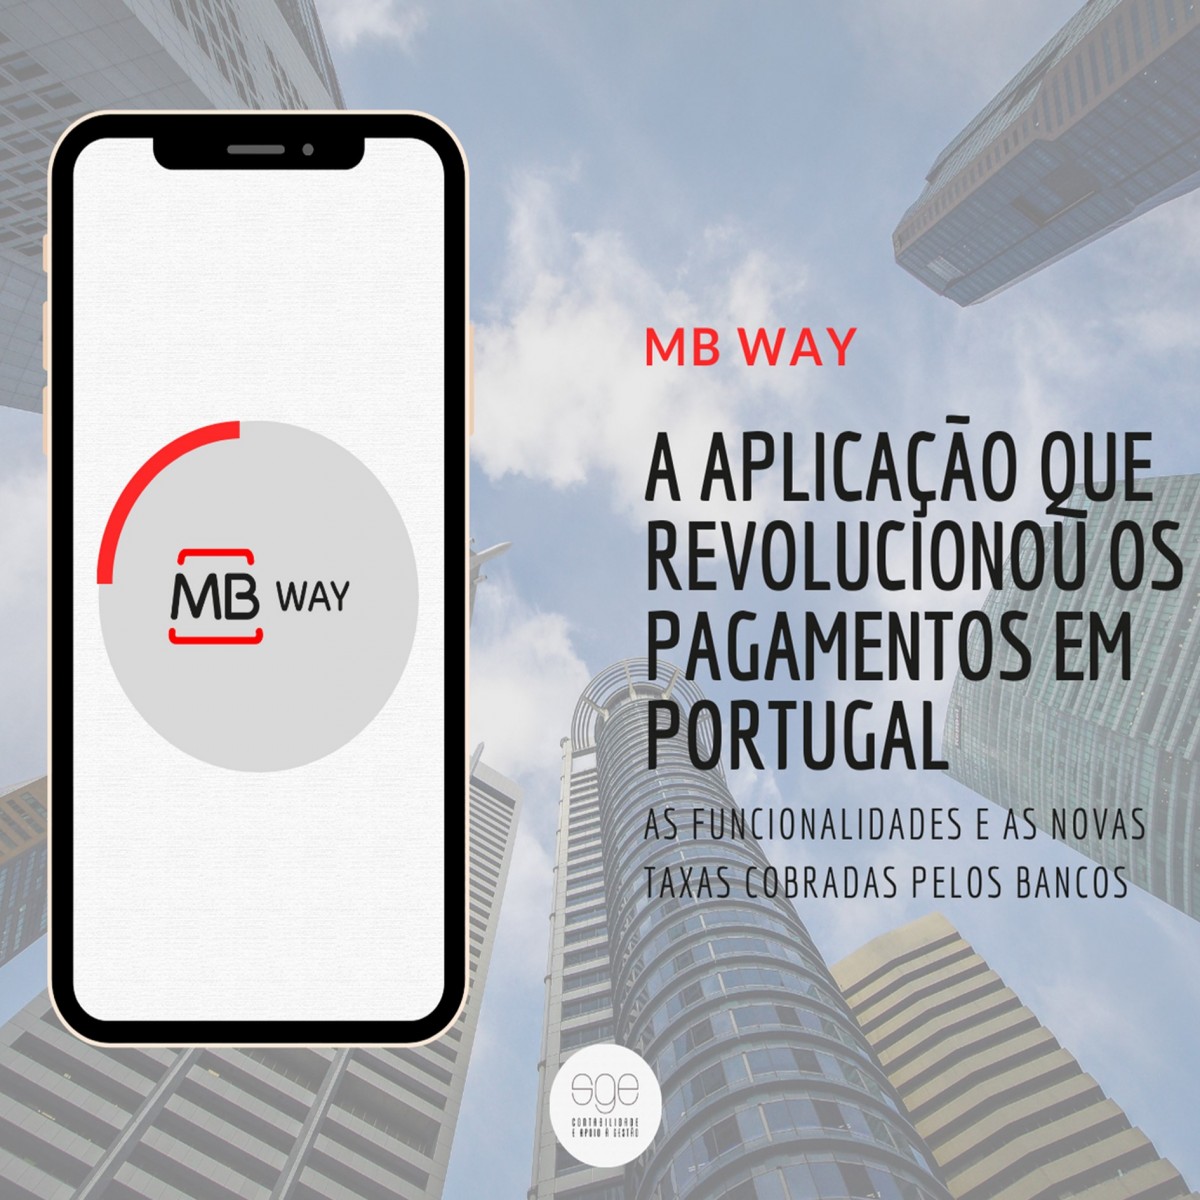 MB way: A aplicação que revolucionou os pagamentos em Portugal